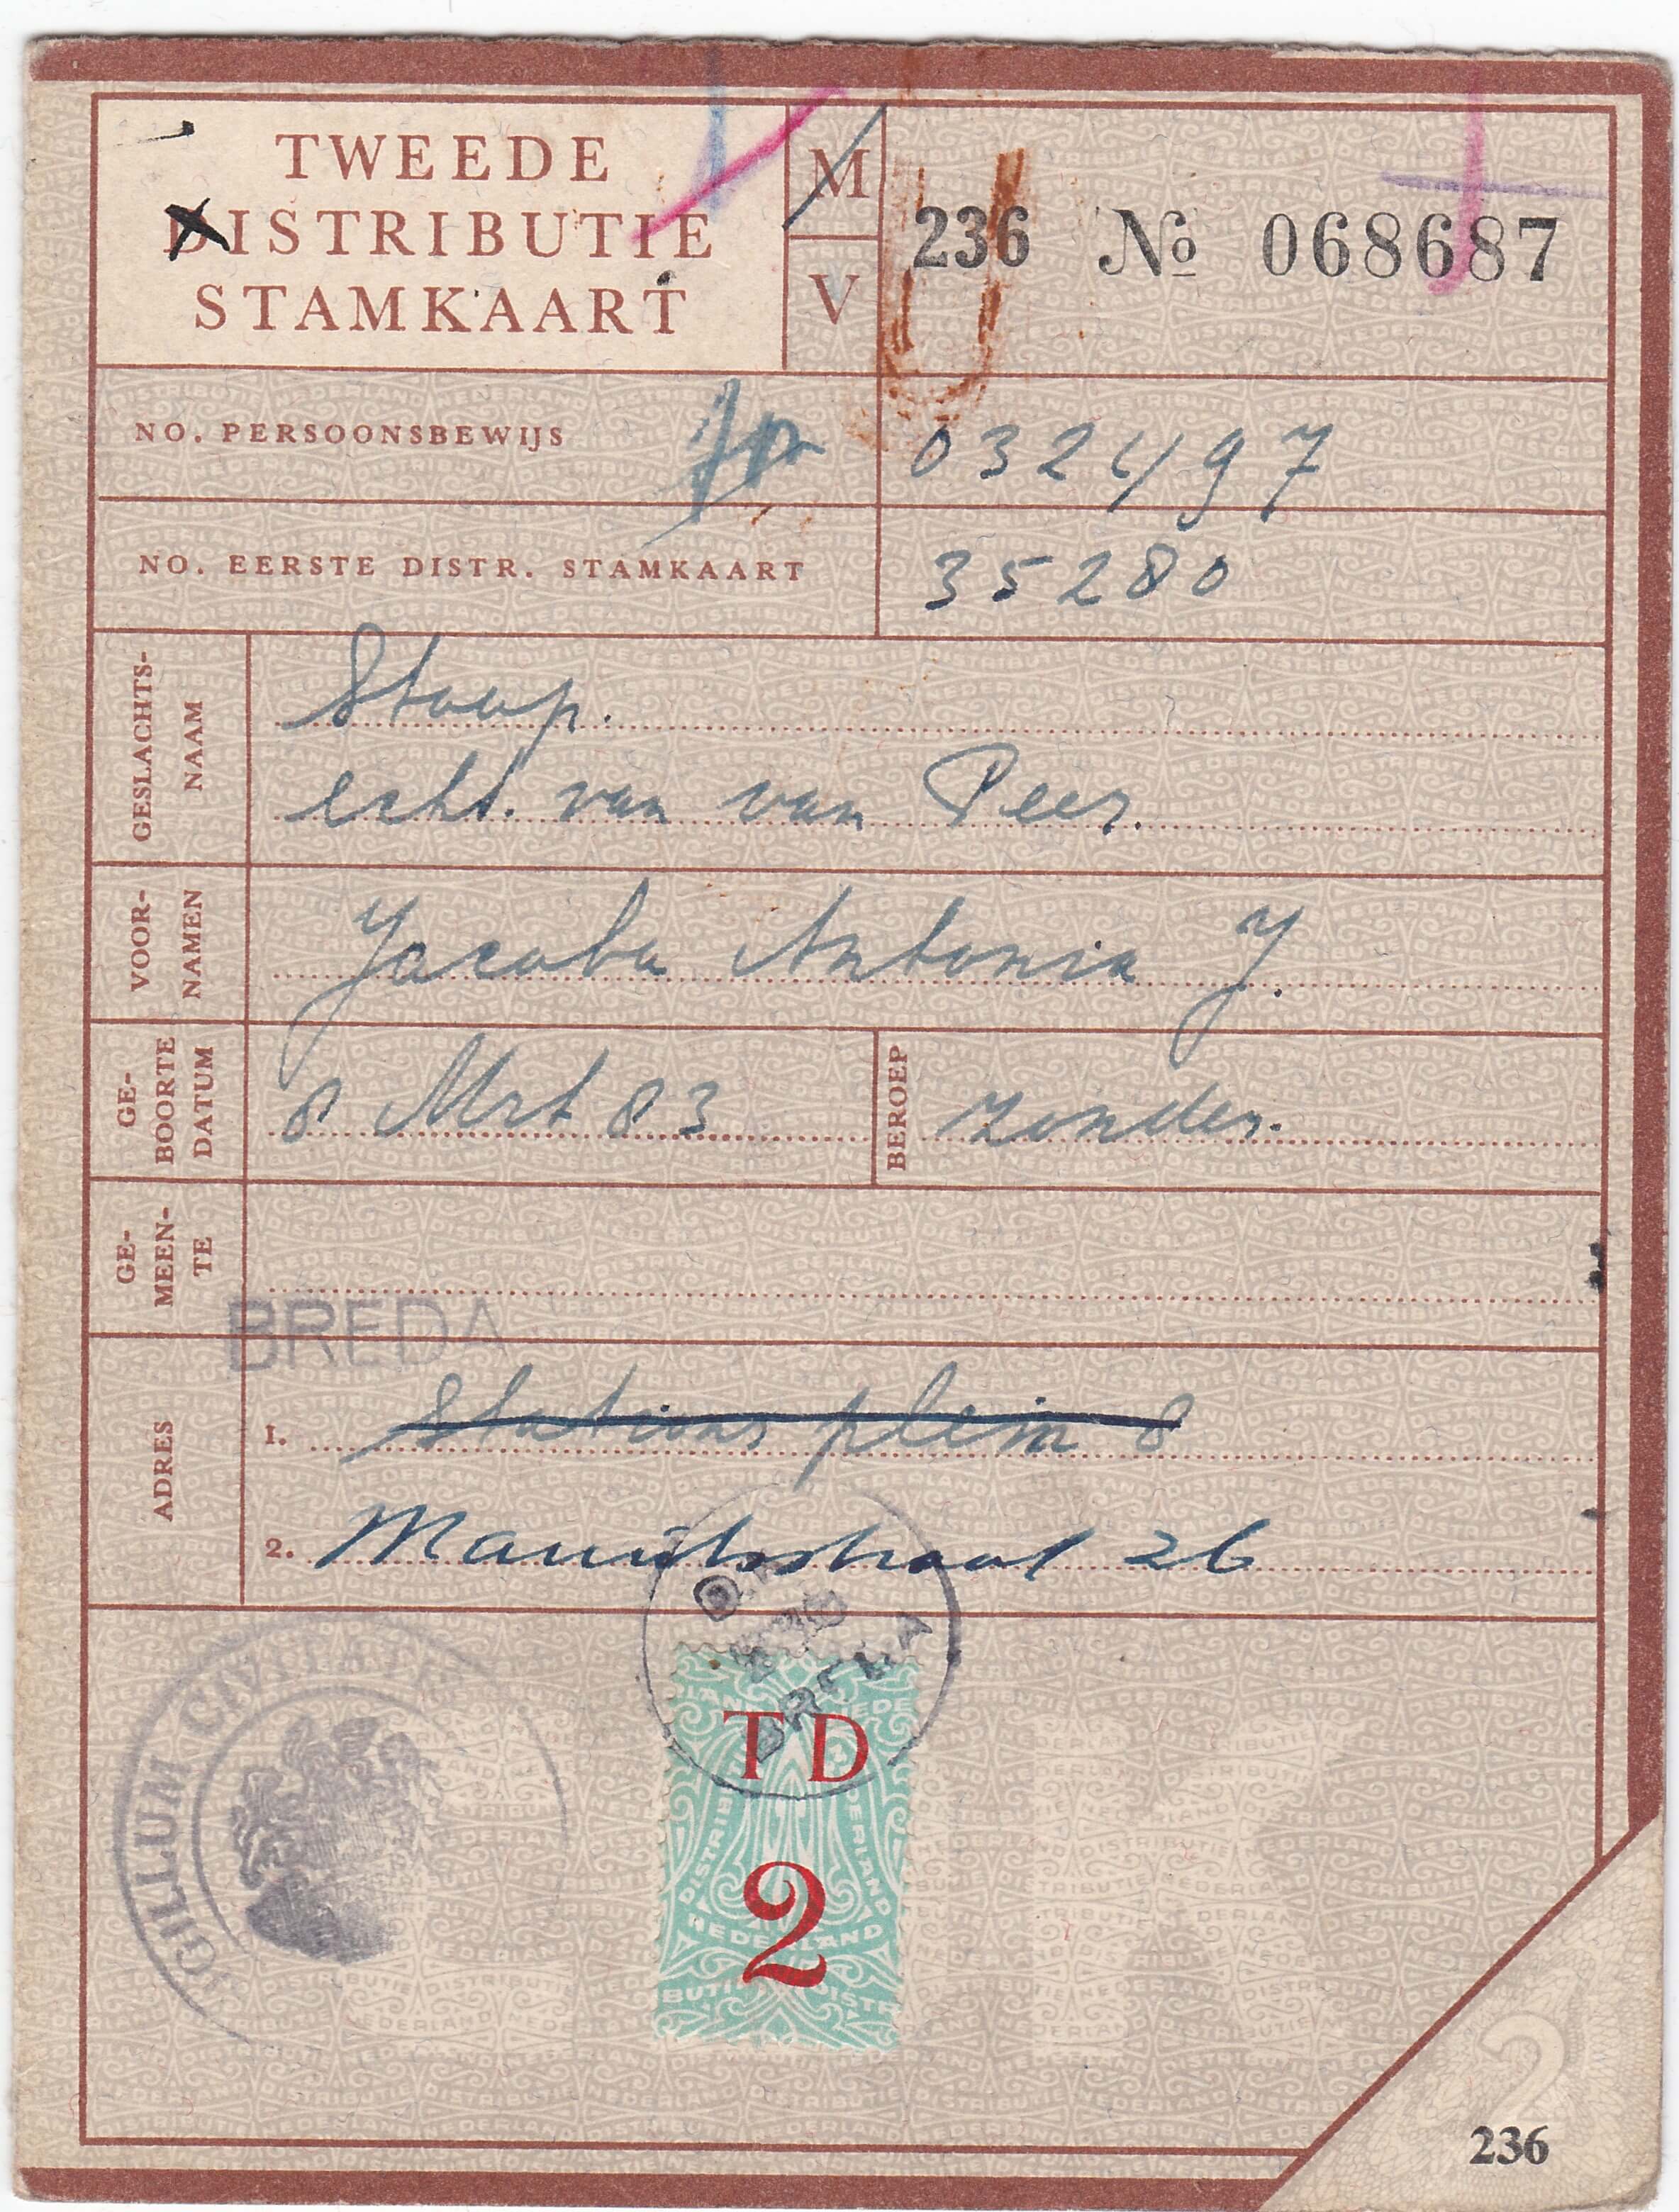 Tweede distributie stamkaart uit de tweede wereldoorlog